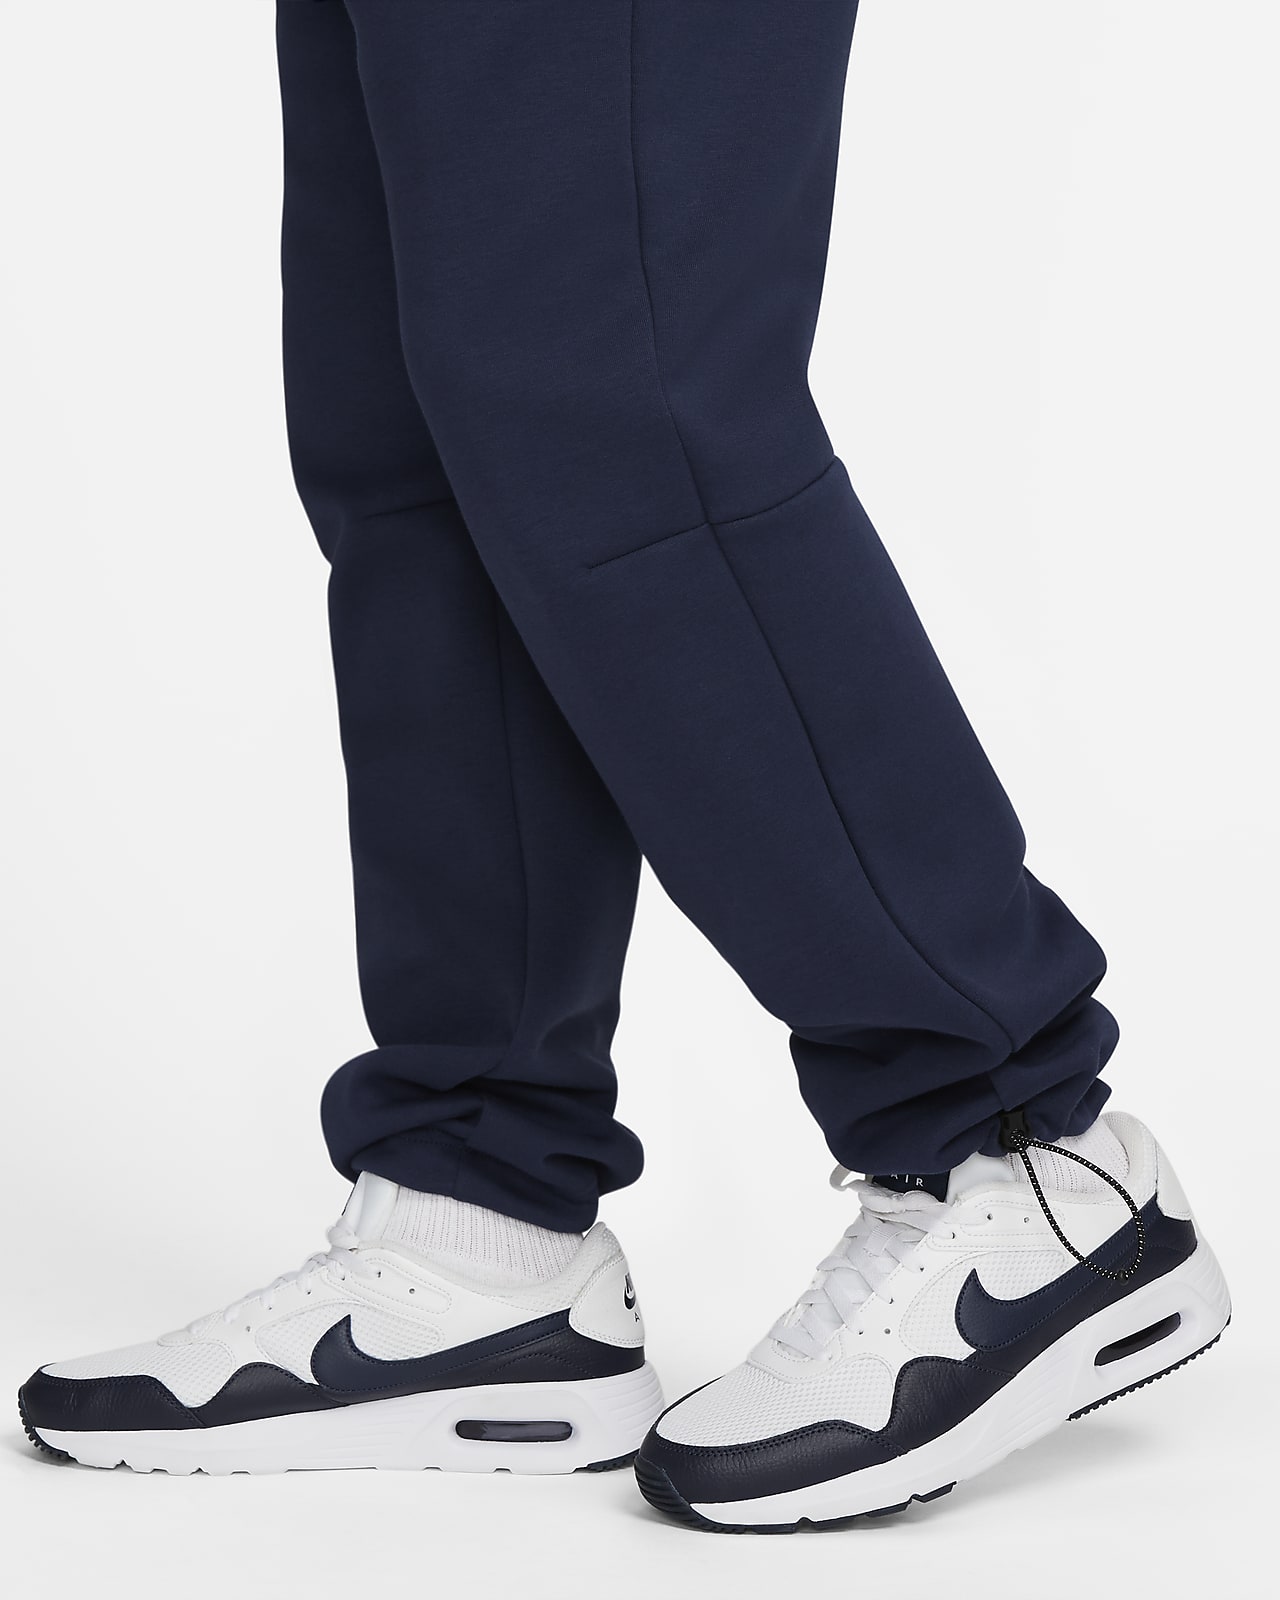 Pantalon de survêtement Nike Tech Fleece - Du XS au 2XL –